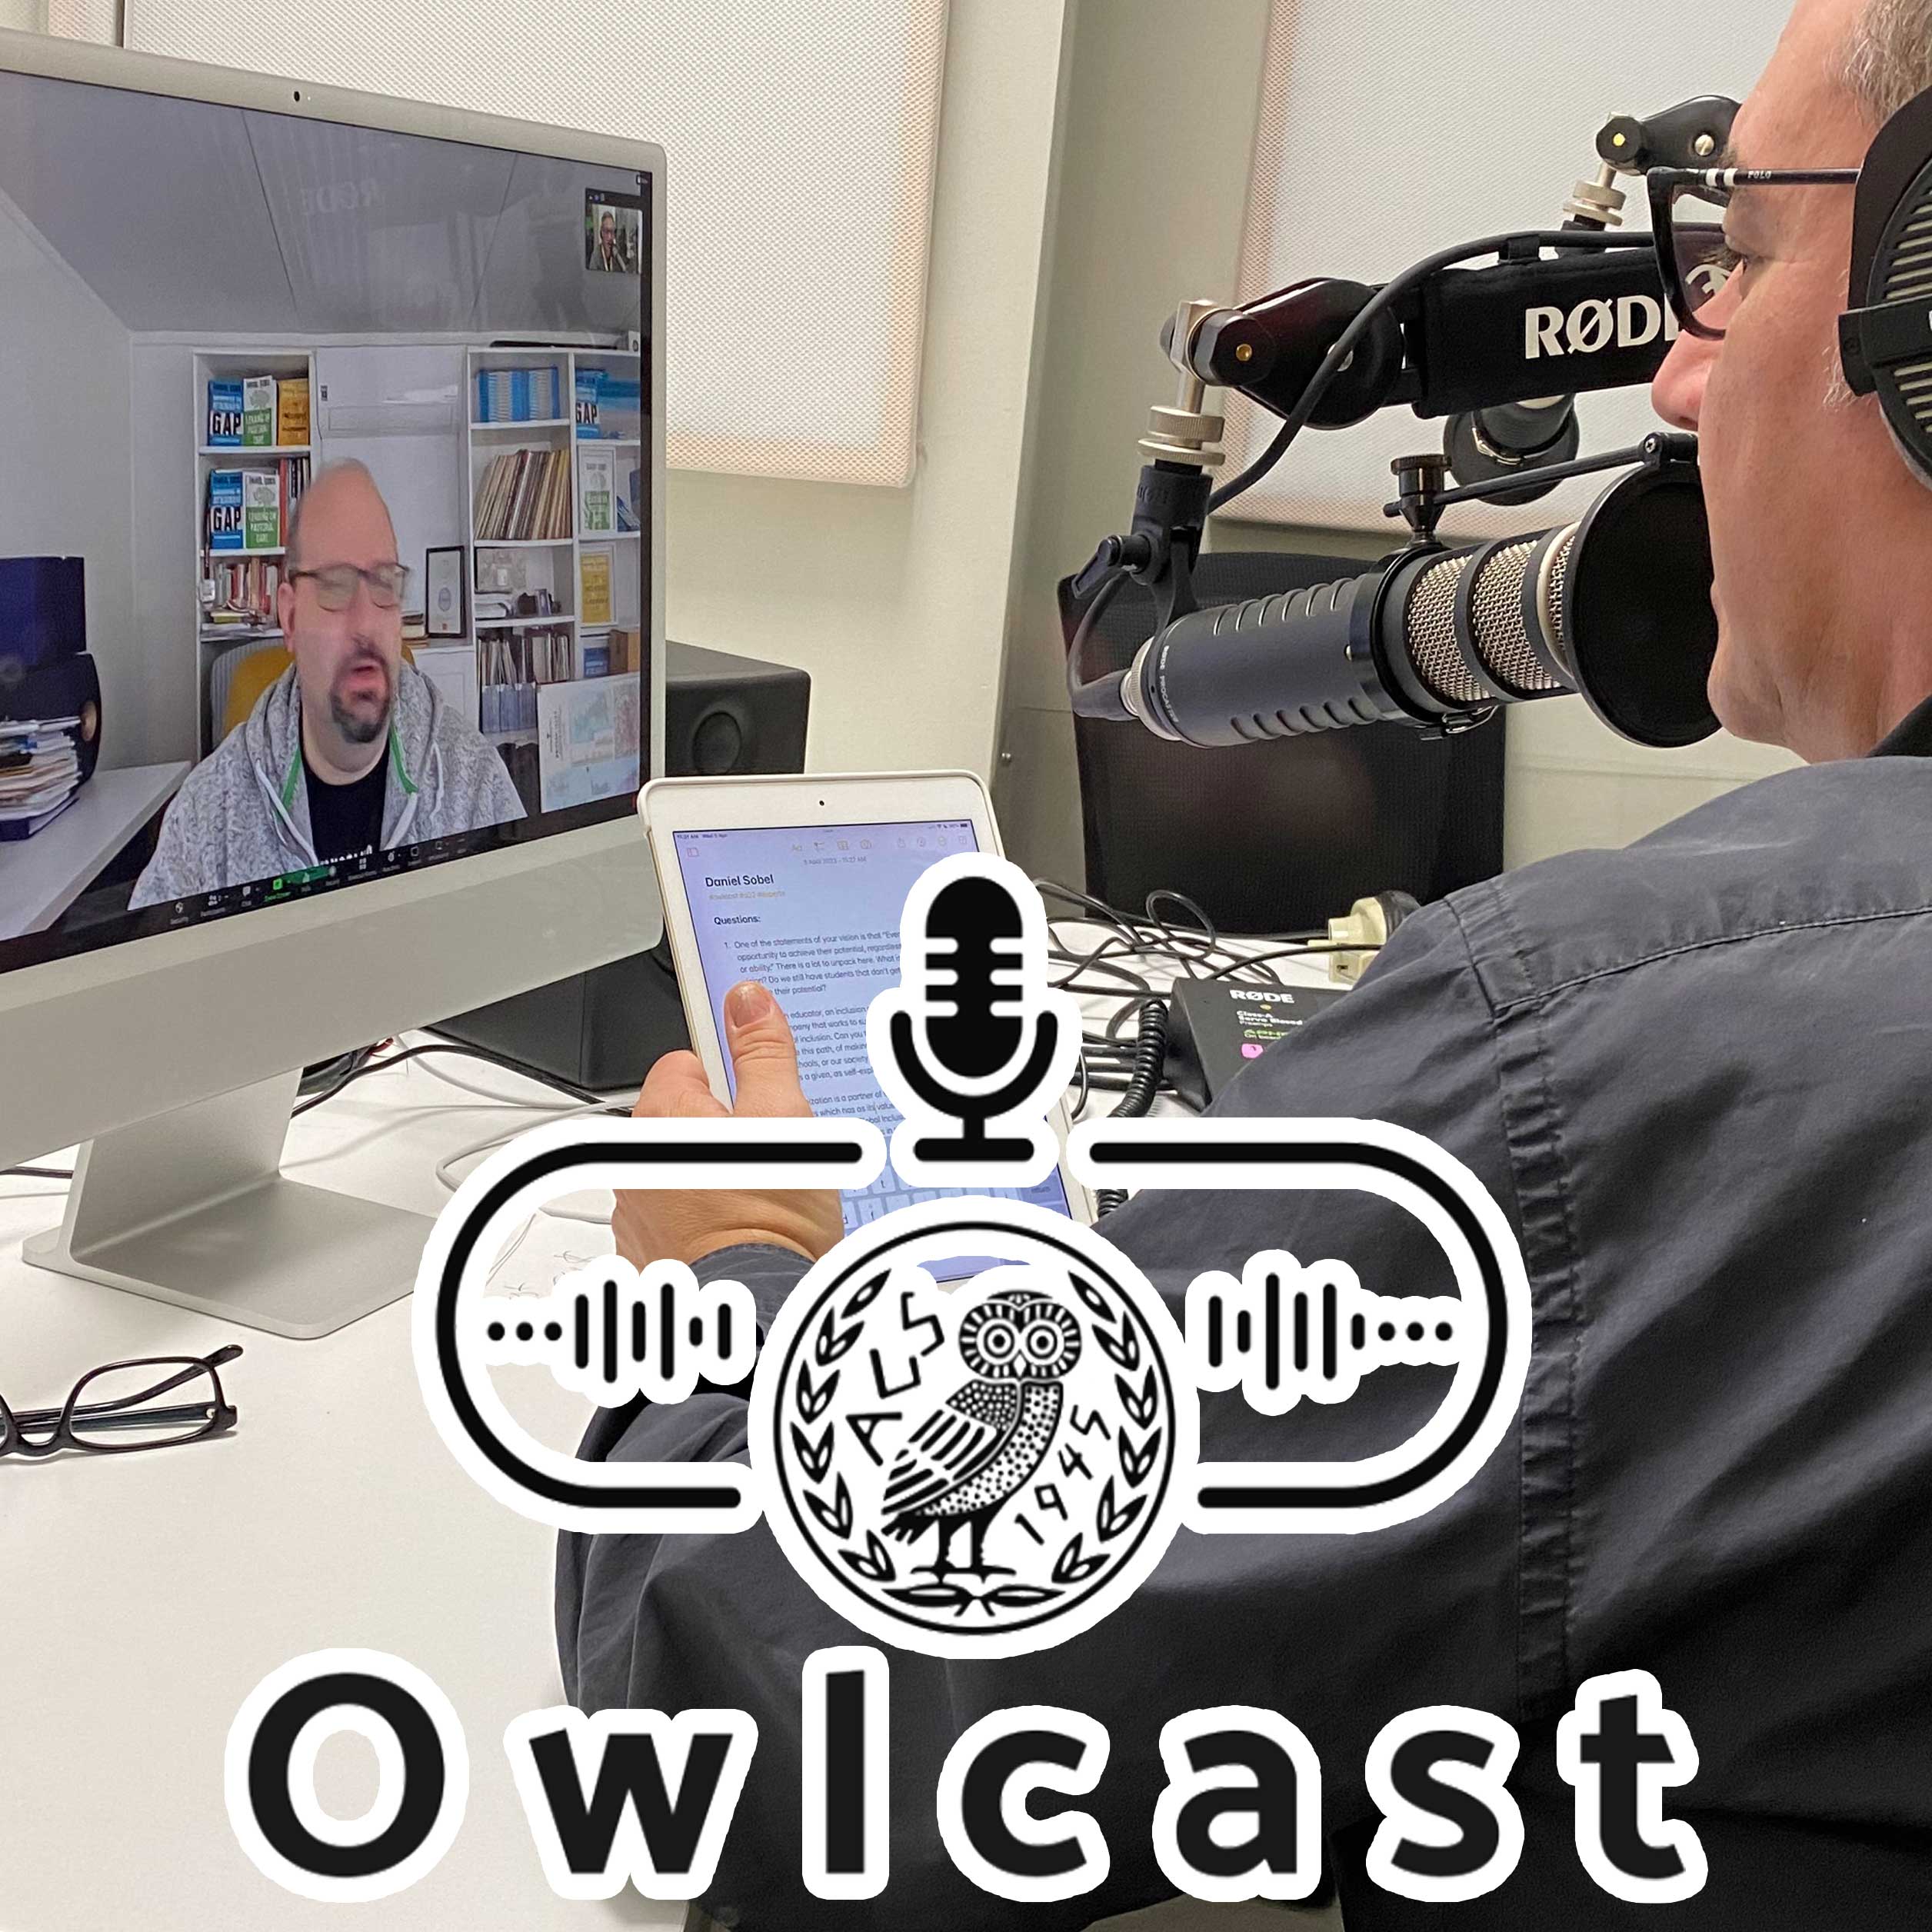 Owlcast 58 - with Daniel Sobel